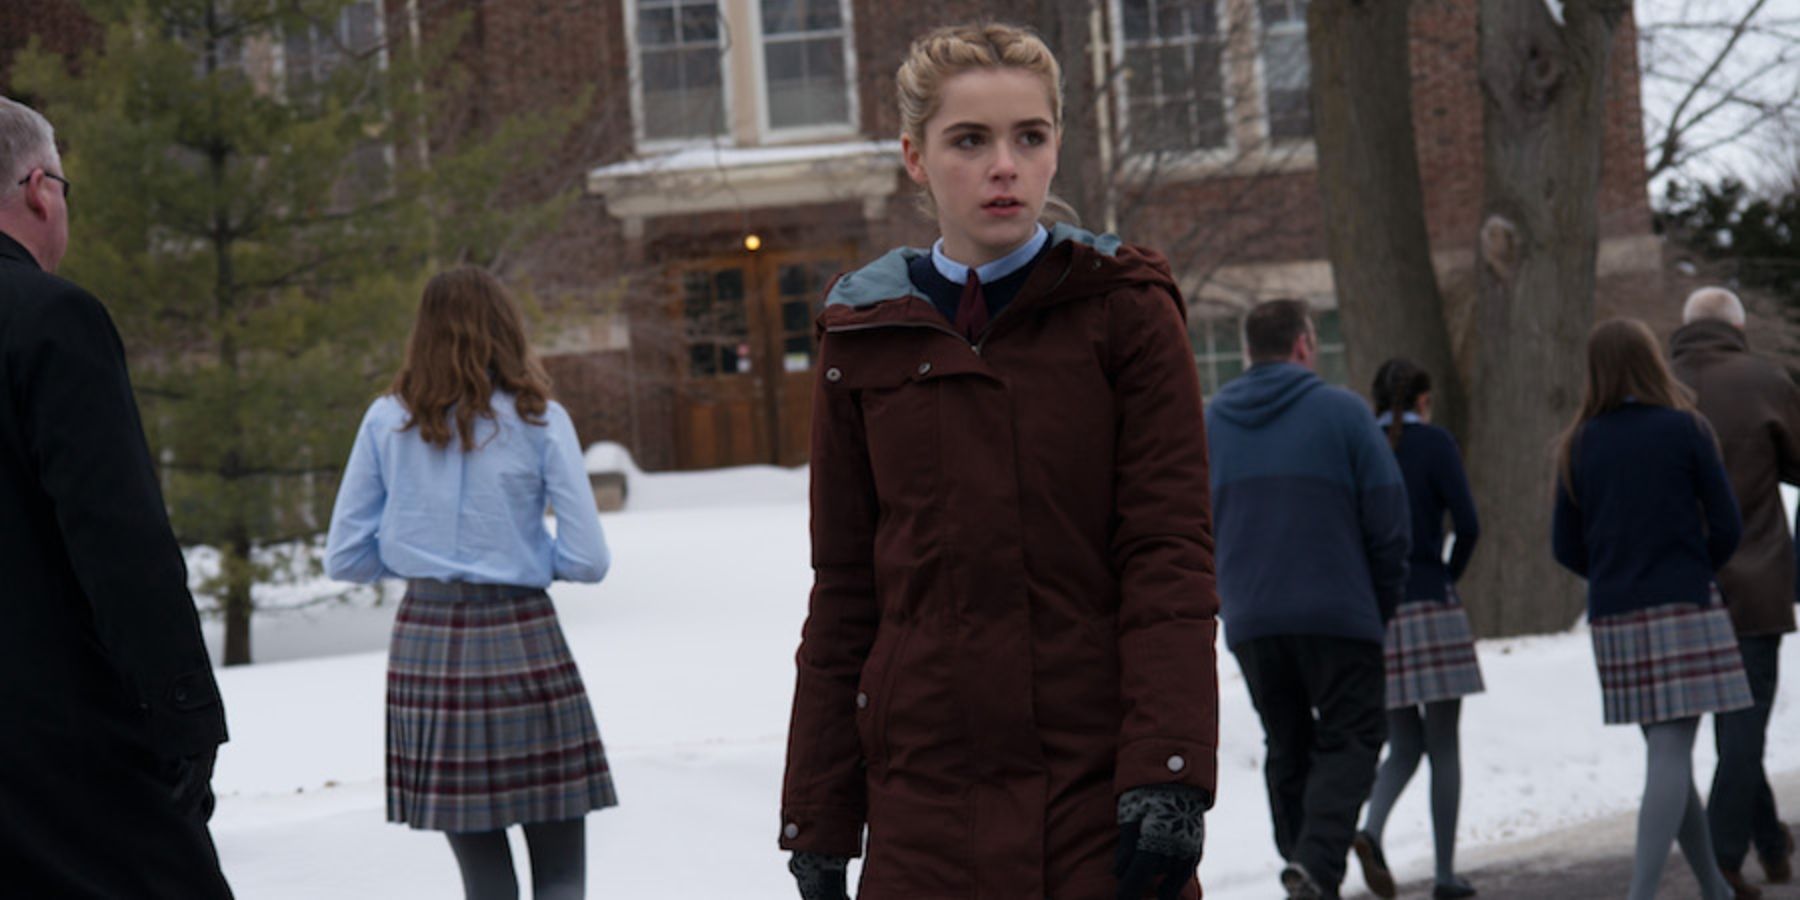 Kiernan Shipka as Kat standing outside boarding school in the snow in The Blackcoat's Daughter